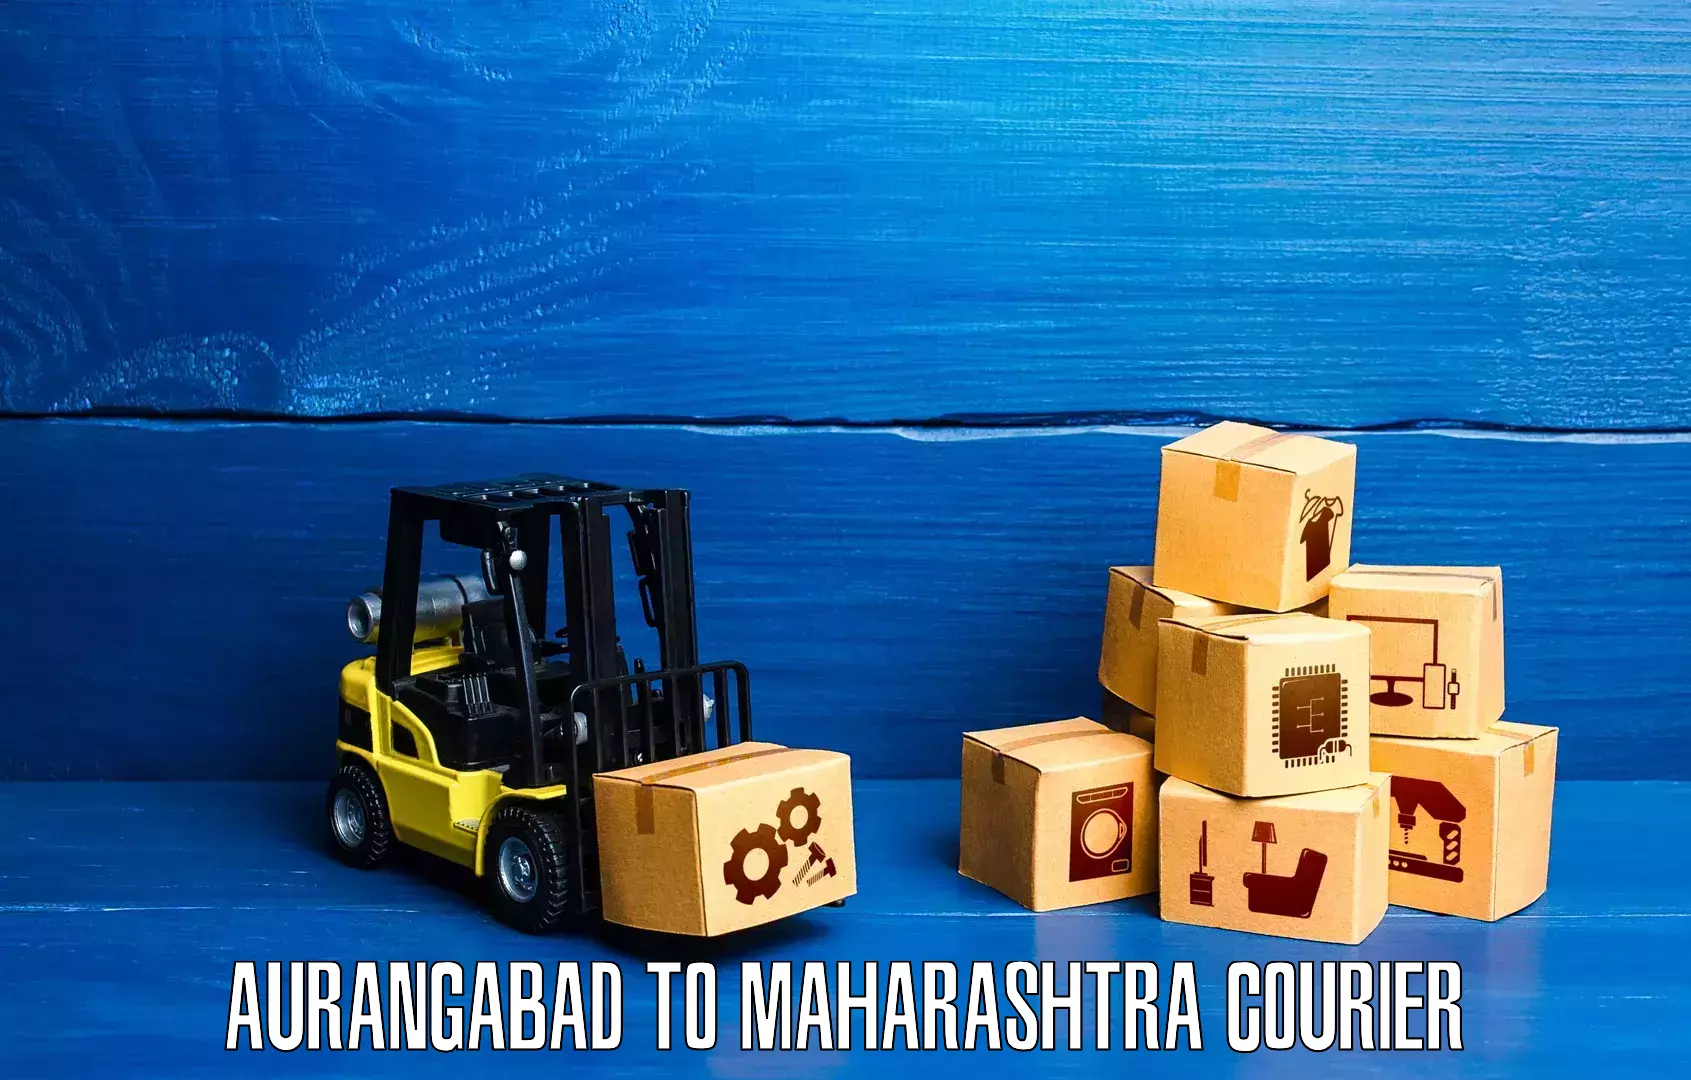 Courier service comparison Aurangabad to Chandrapur